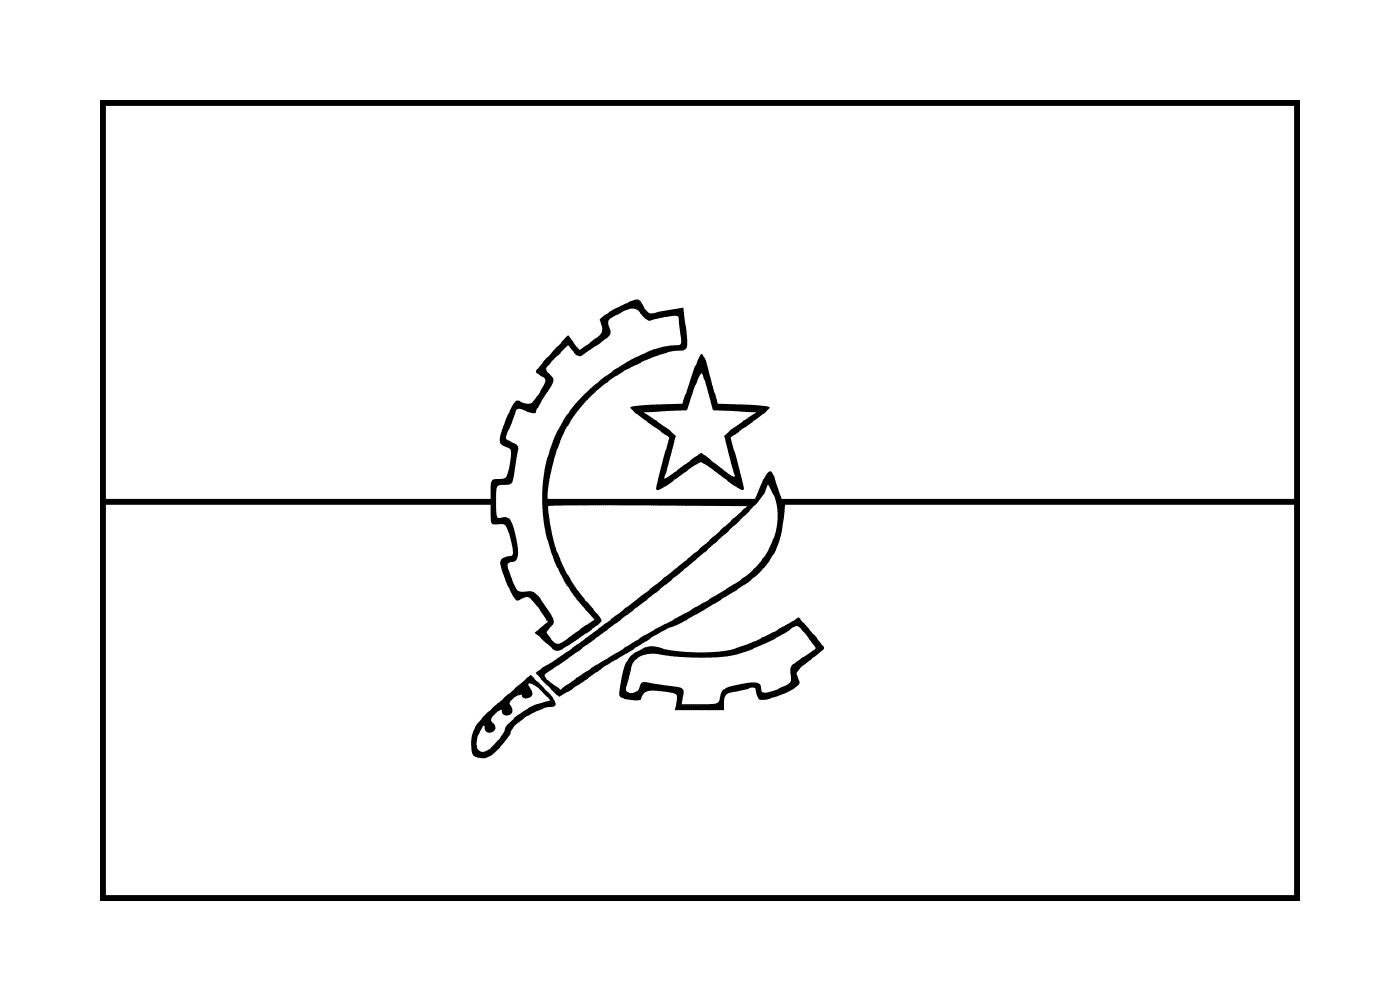  Bandiera dell'Angola 